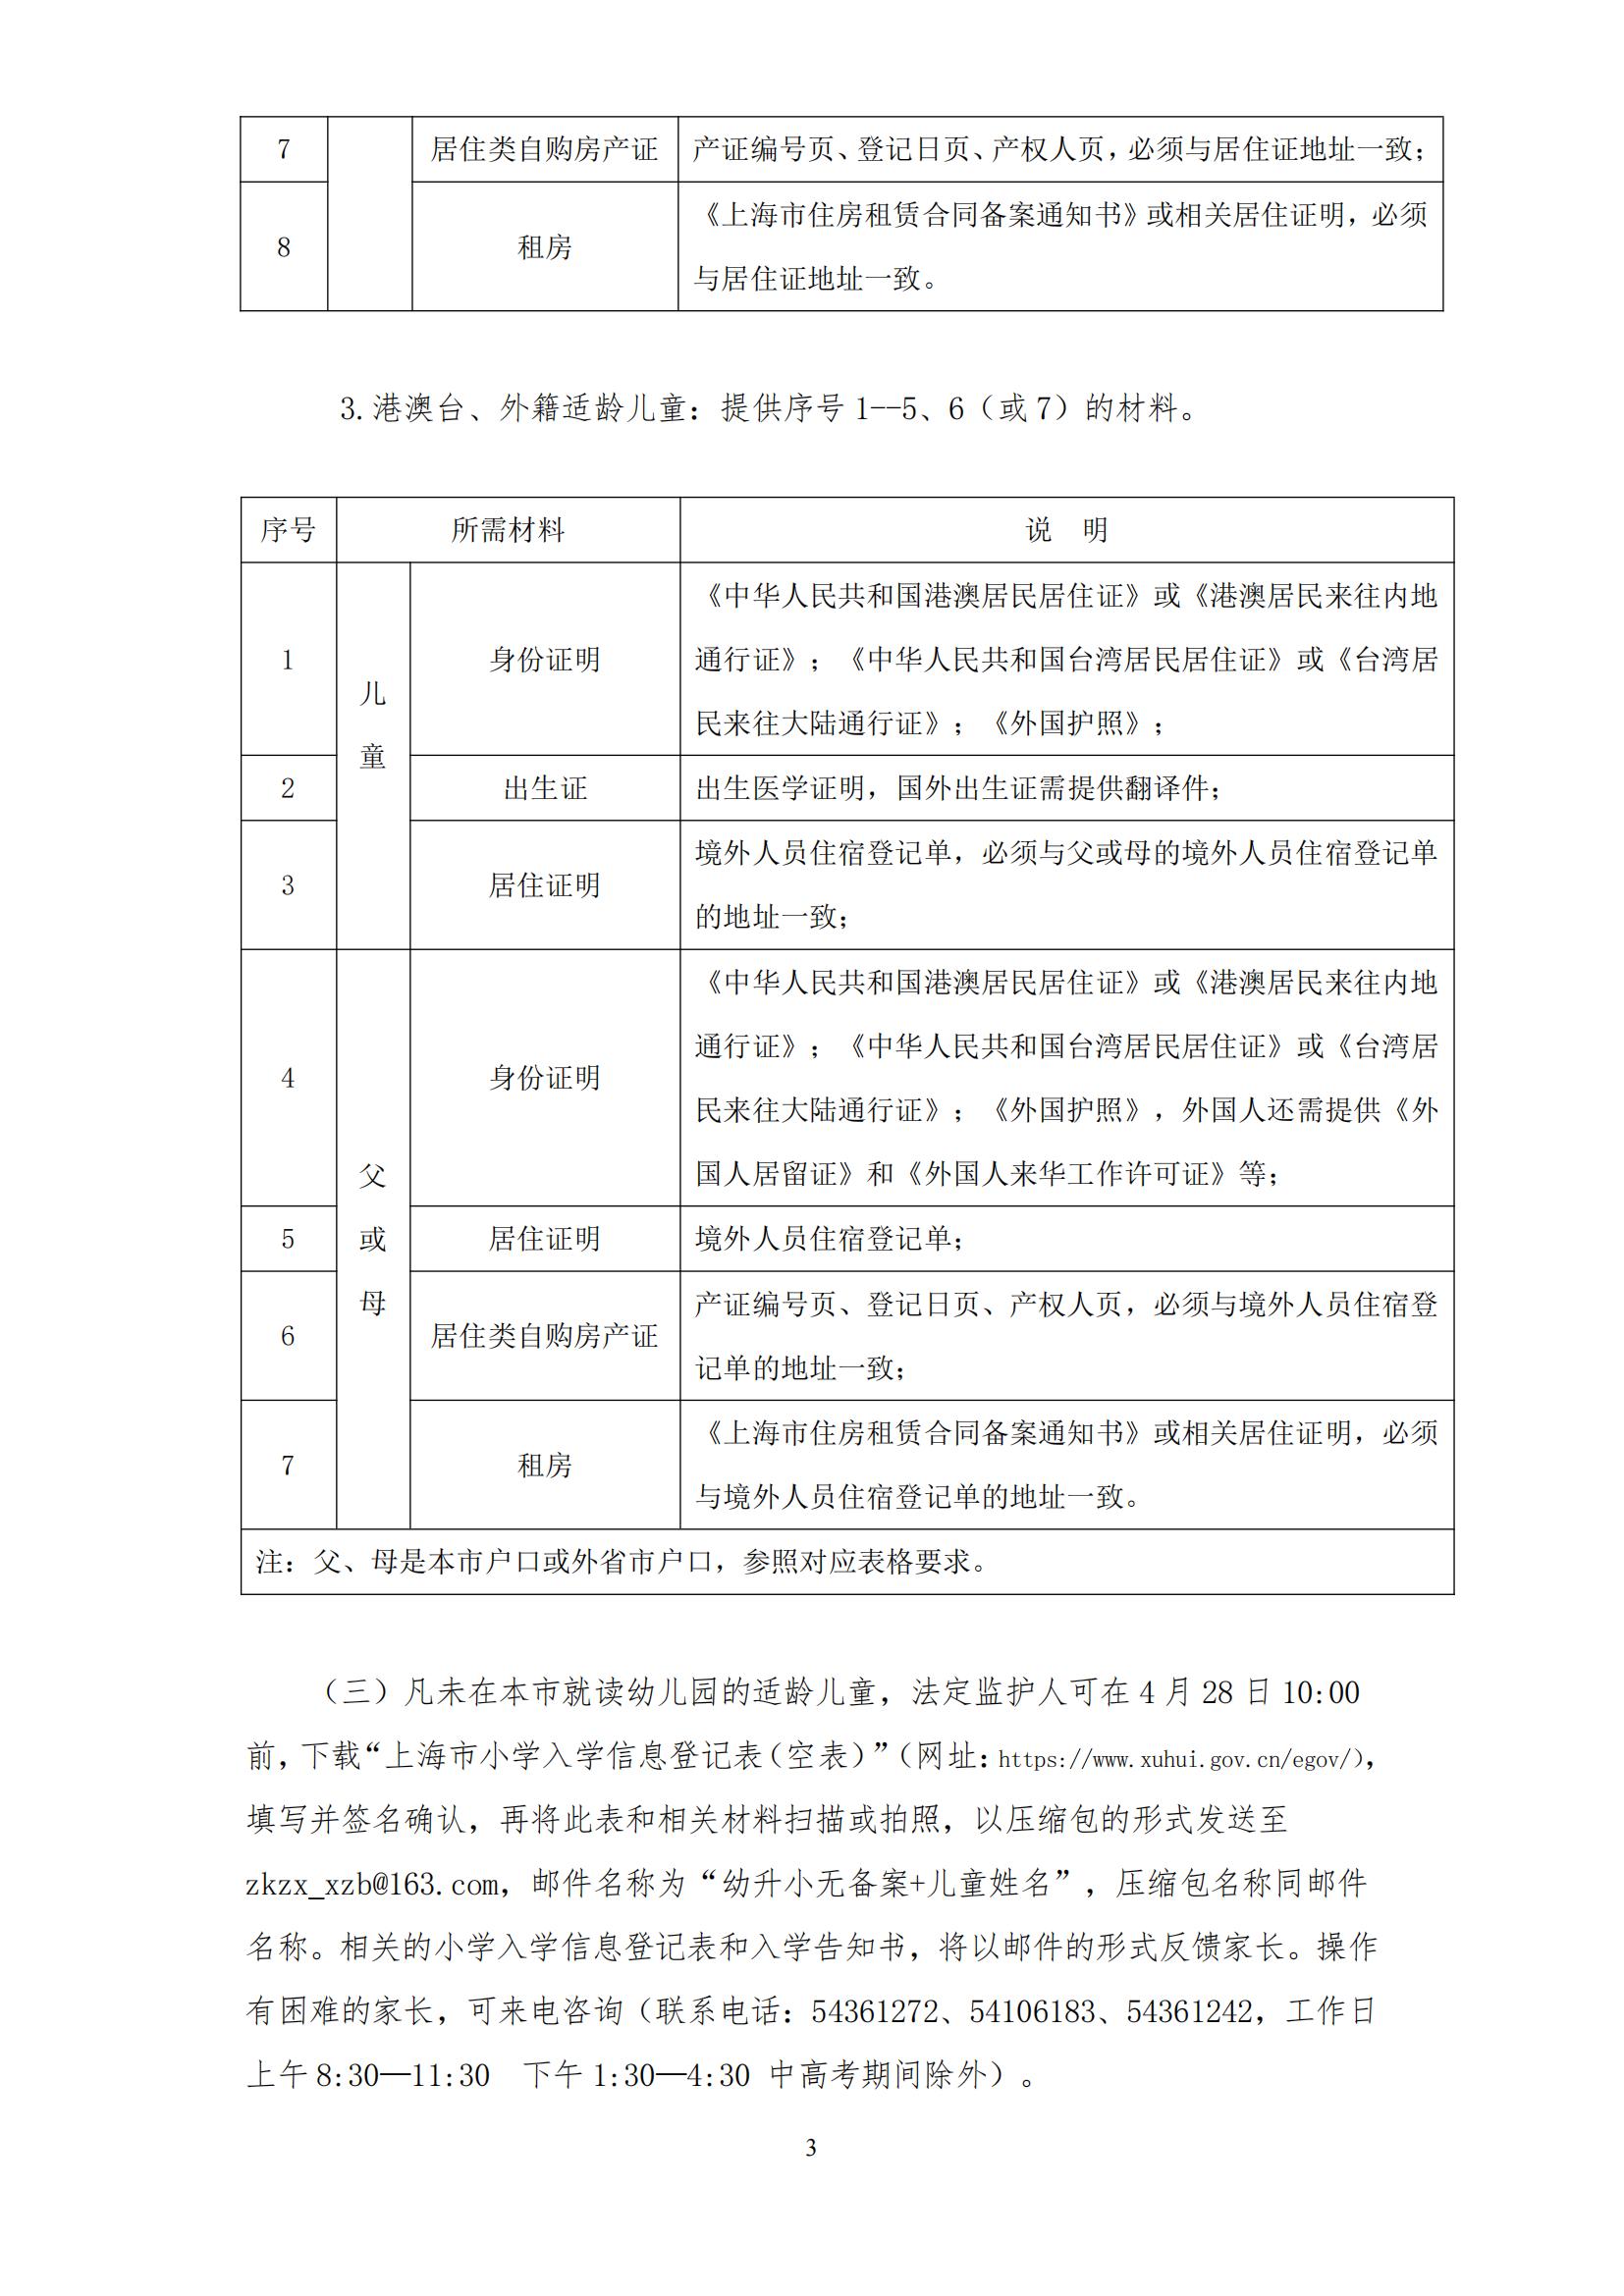 2024年徐汇区小学一年级招生通告(3)_02.jpg